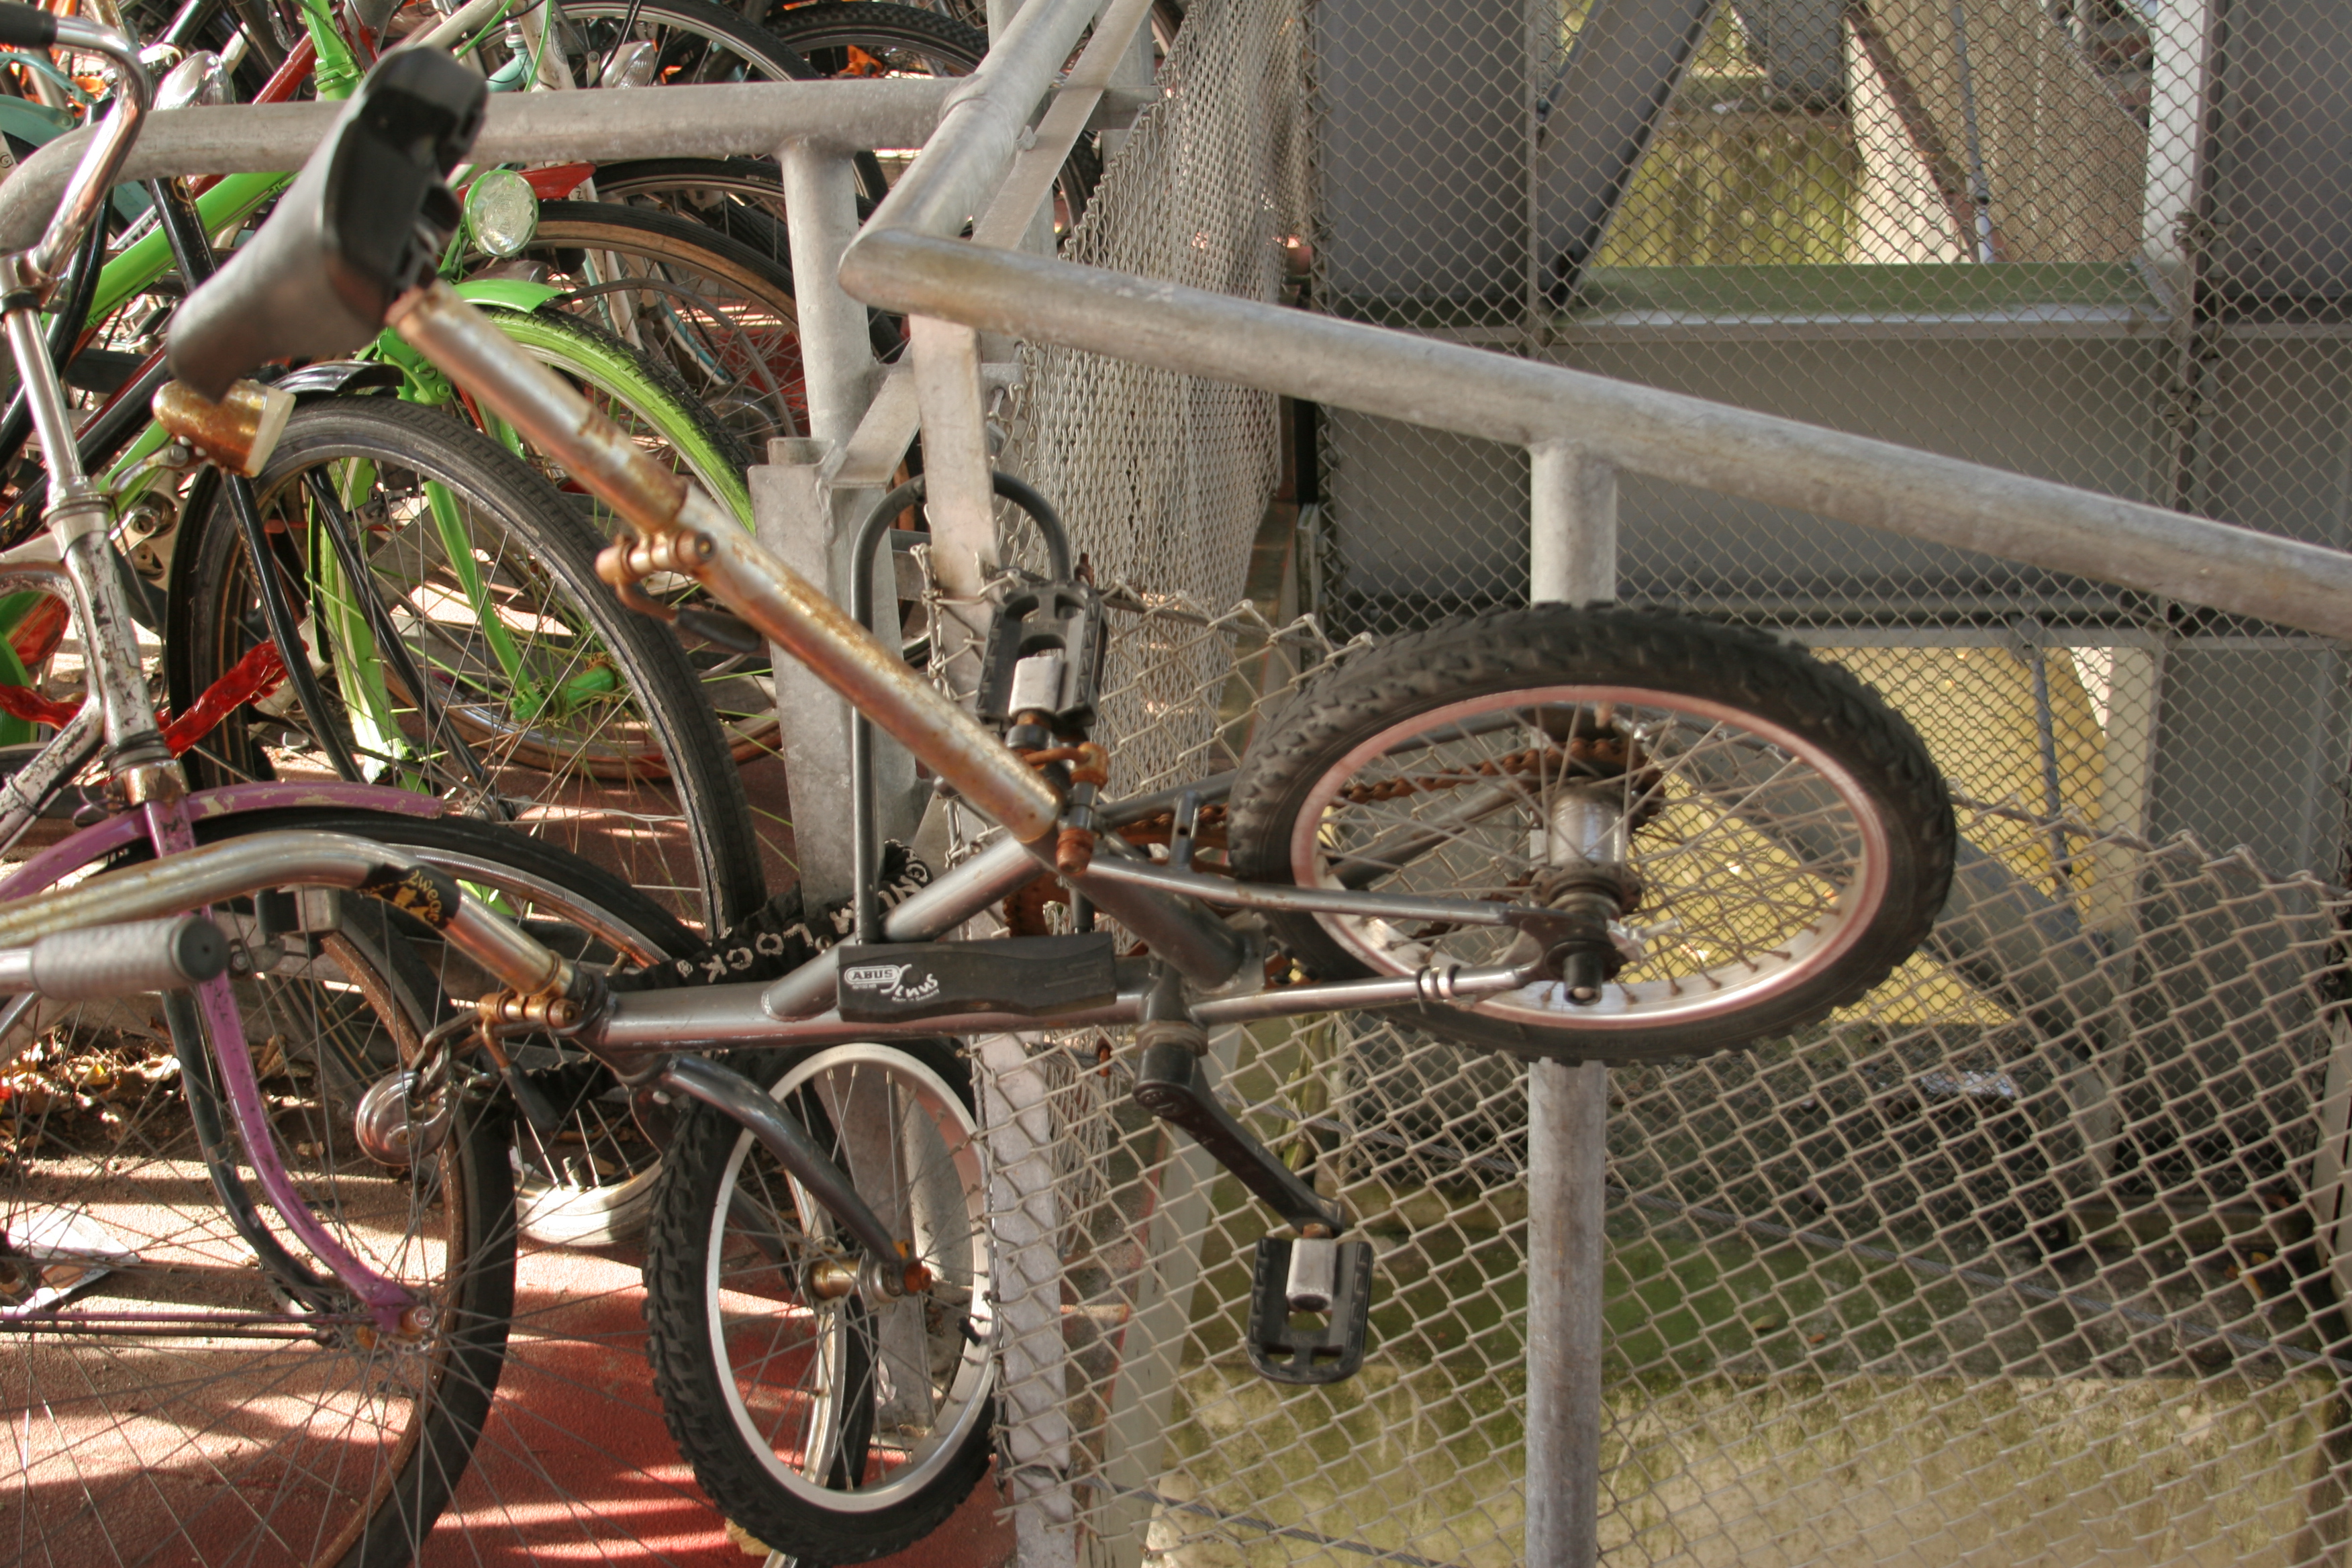 Bikes at ams station 18oct05 - 7 photo